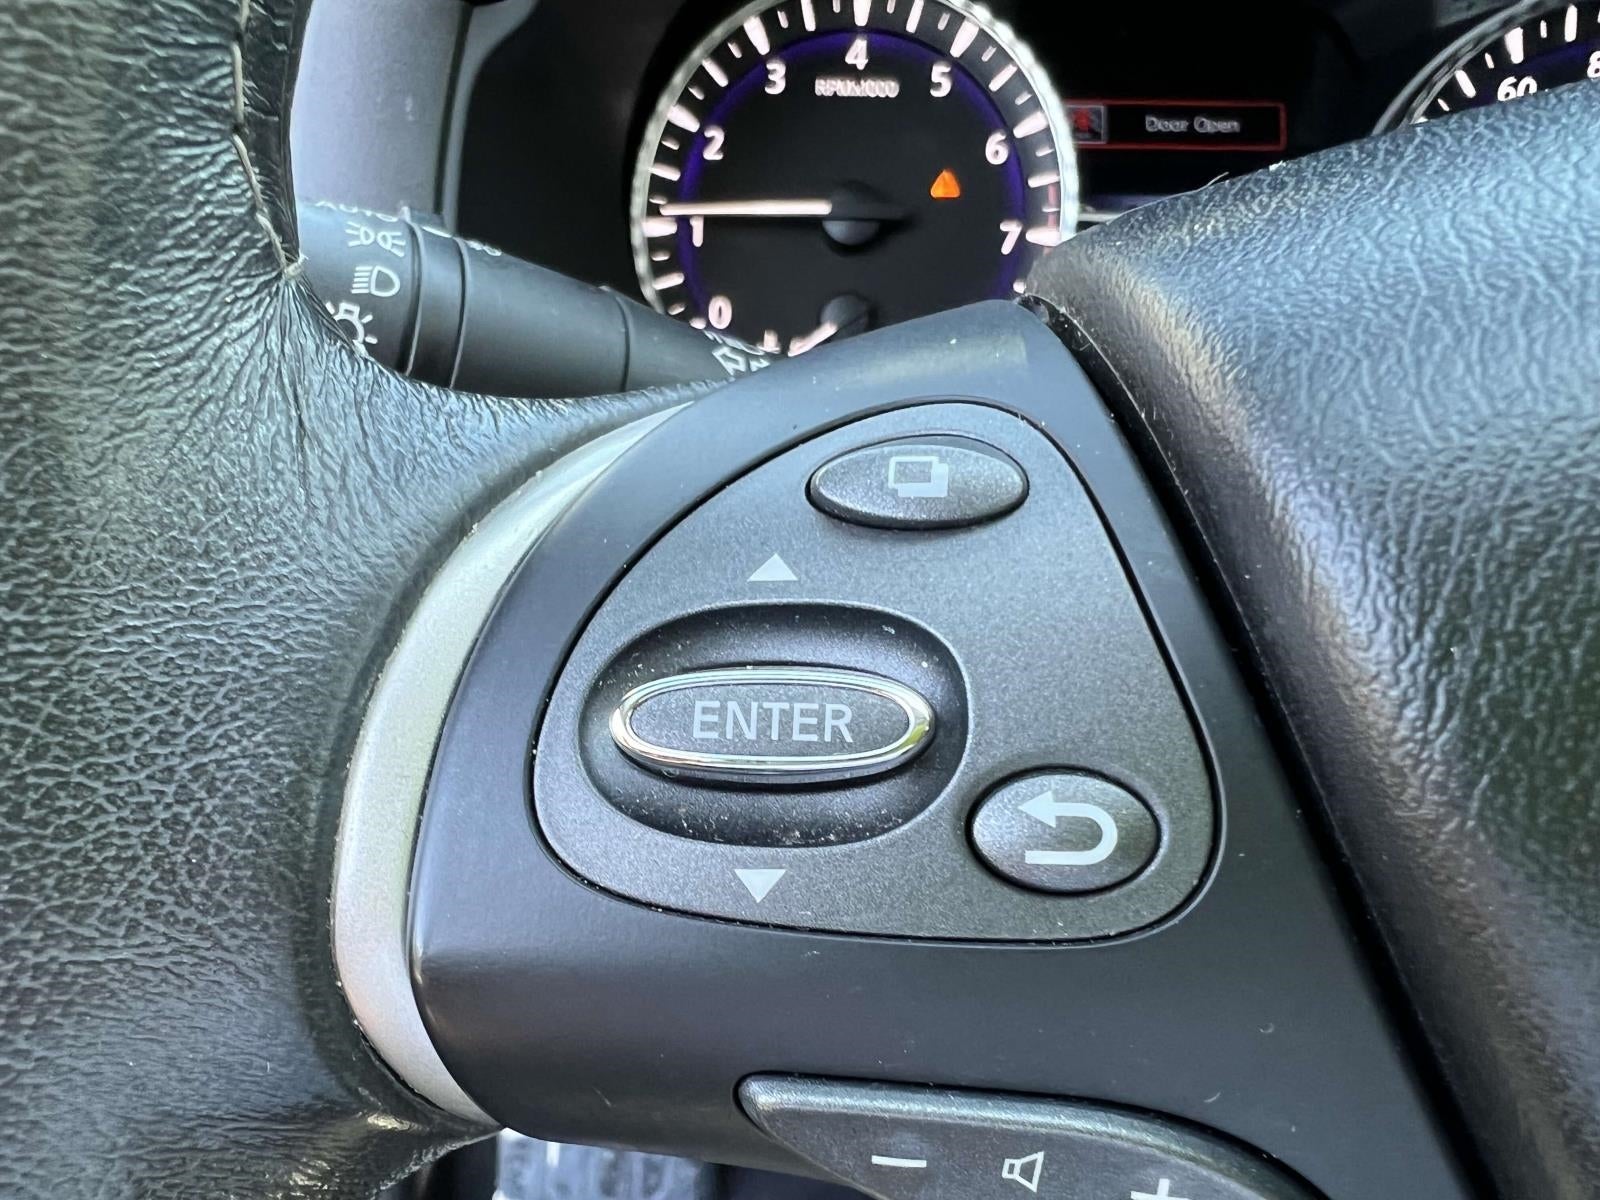 2019 INFINITI QX60 2019.5 LUXE AWD